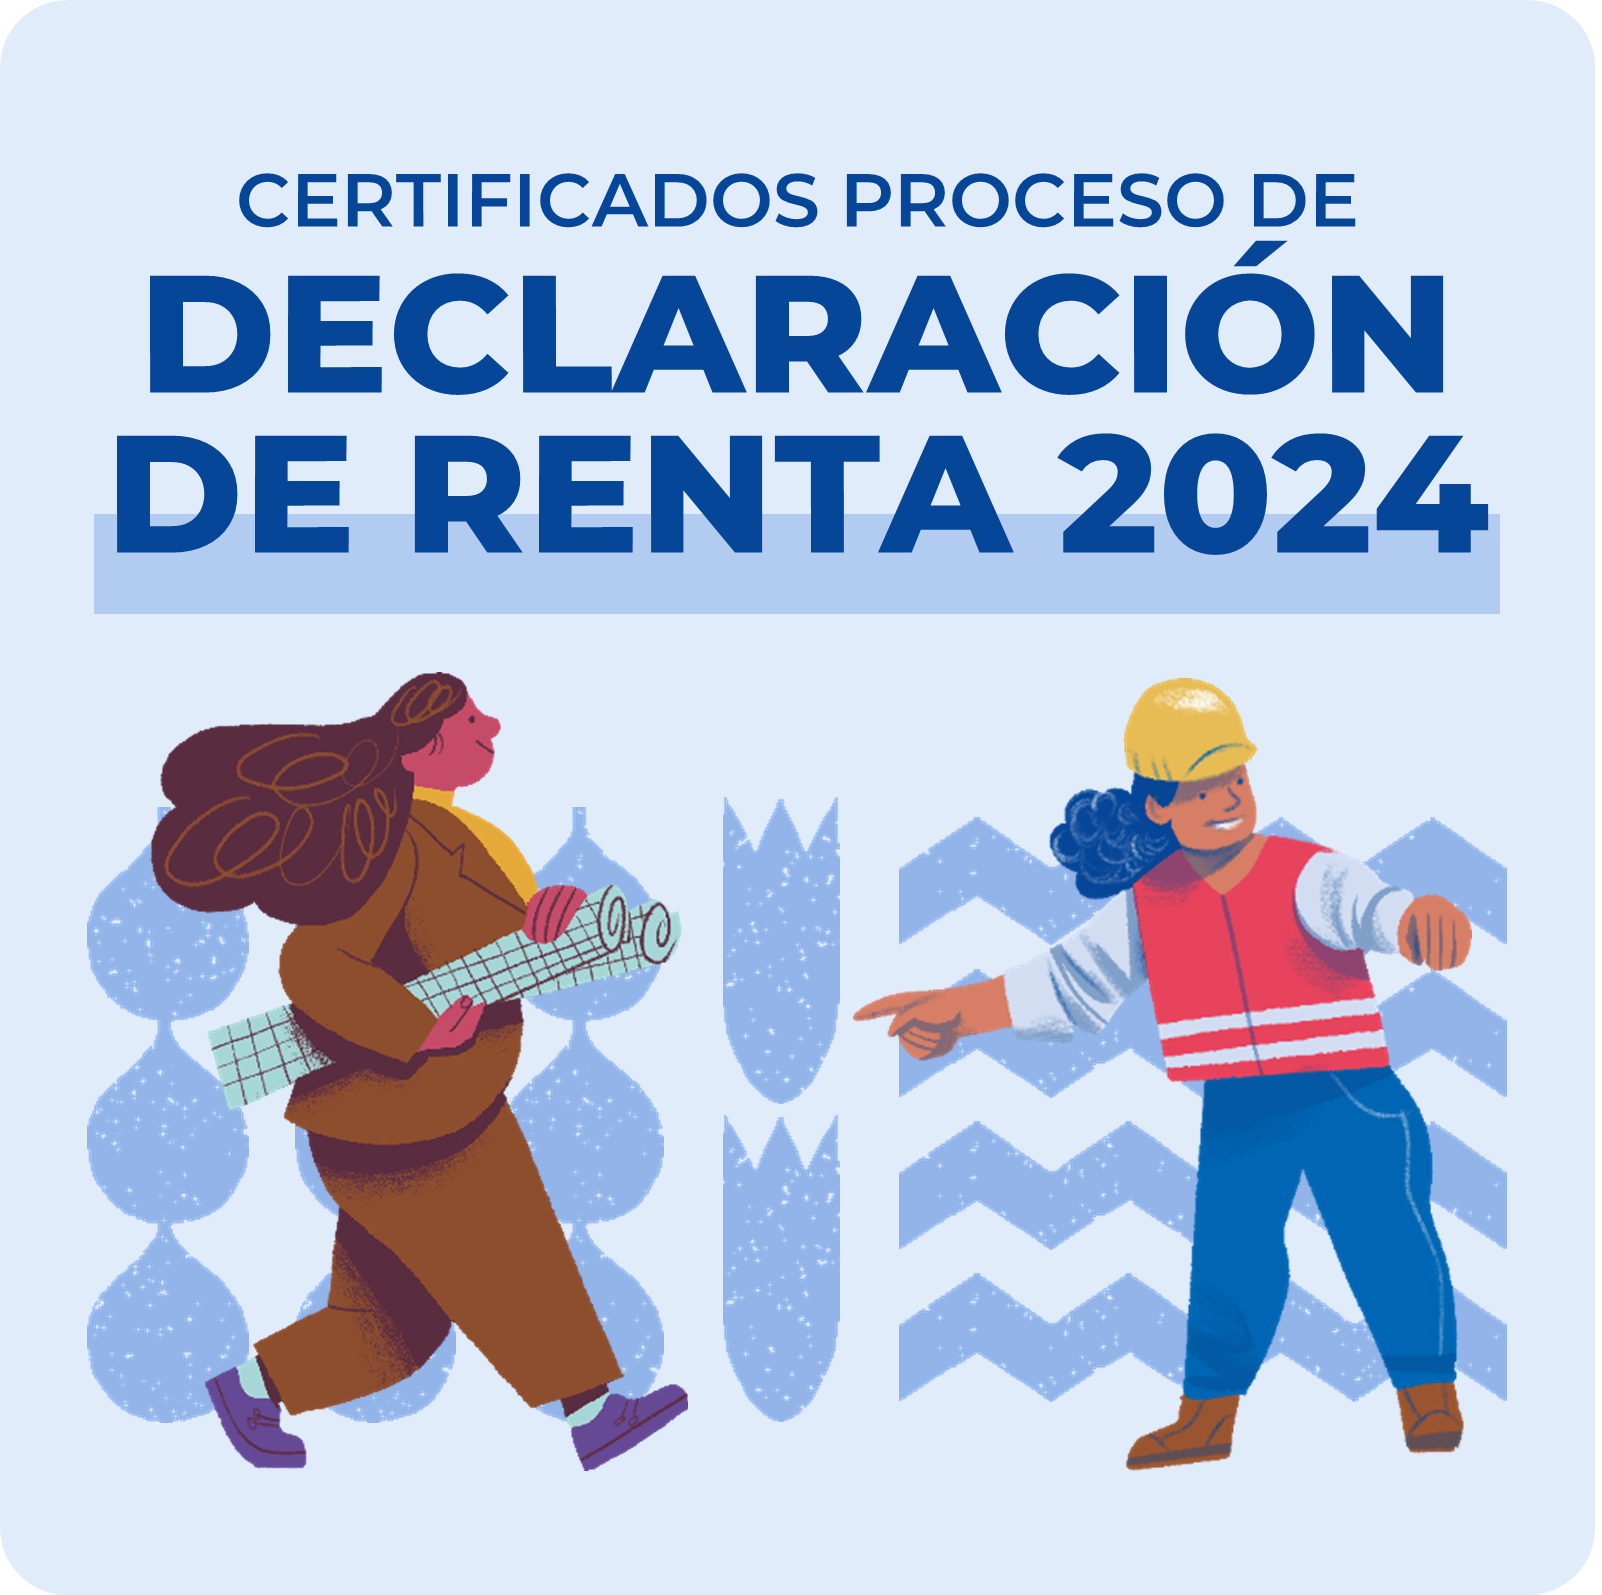 La Dirección de Contabilidad y Finanzas informa que los Certificados de Renta correspondientes al período 2023, se encuentran disponibles en los siguientes enlaces.